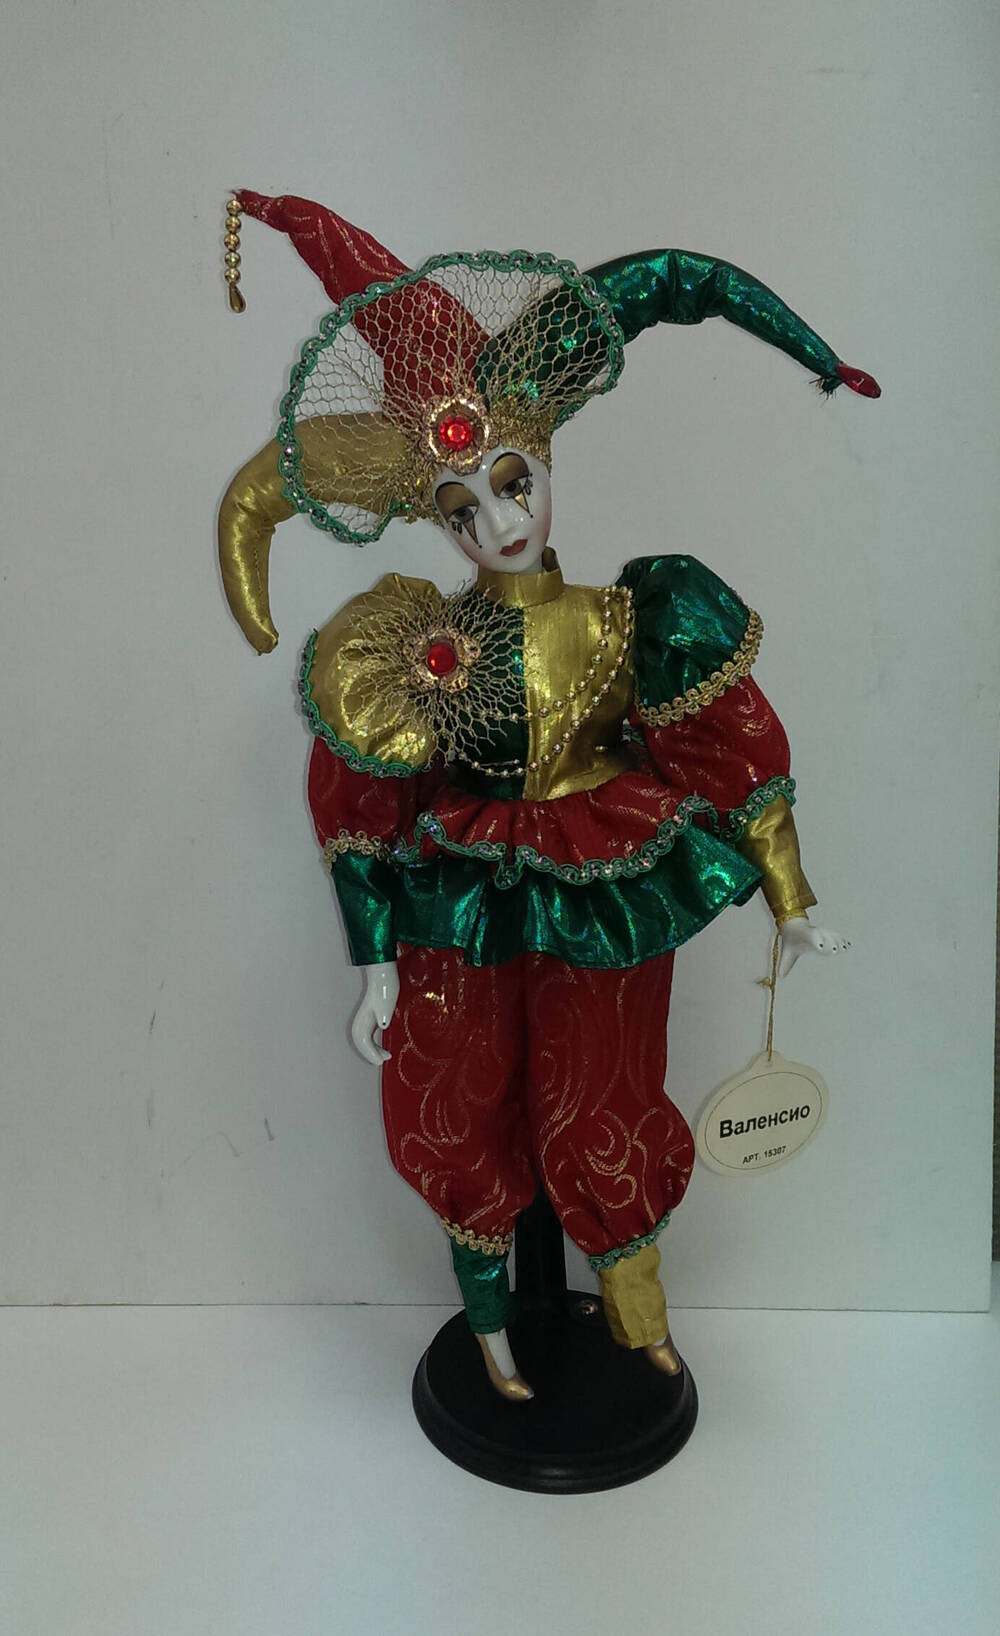 Валенсио. Кукла из Коллекции кукол ручной работы с фарфоровыми элементами «Арлекин» компании «Ремеко», Великобритания (Remeco HARLEQUIN Collection).